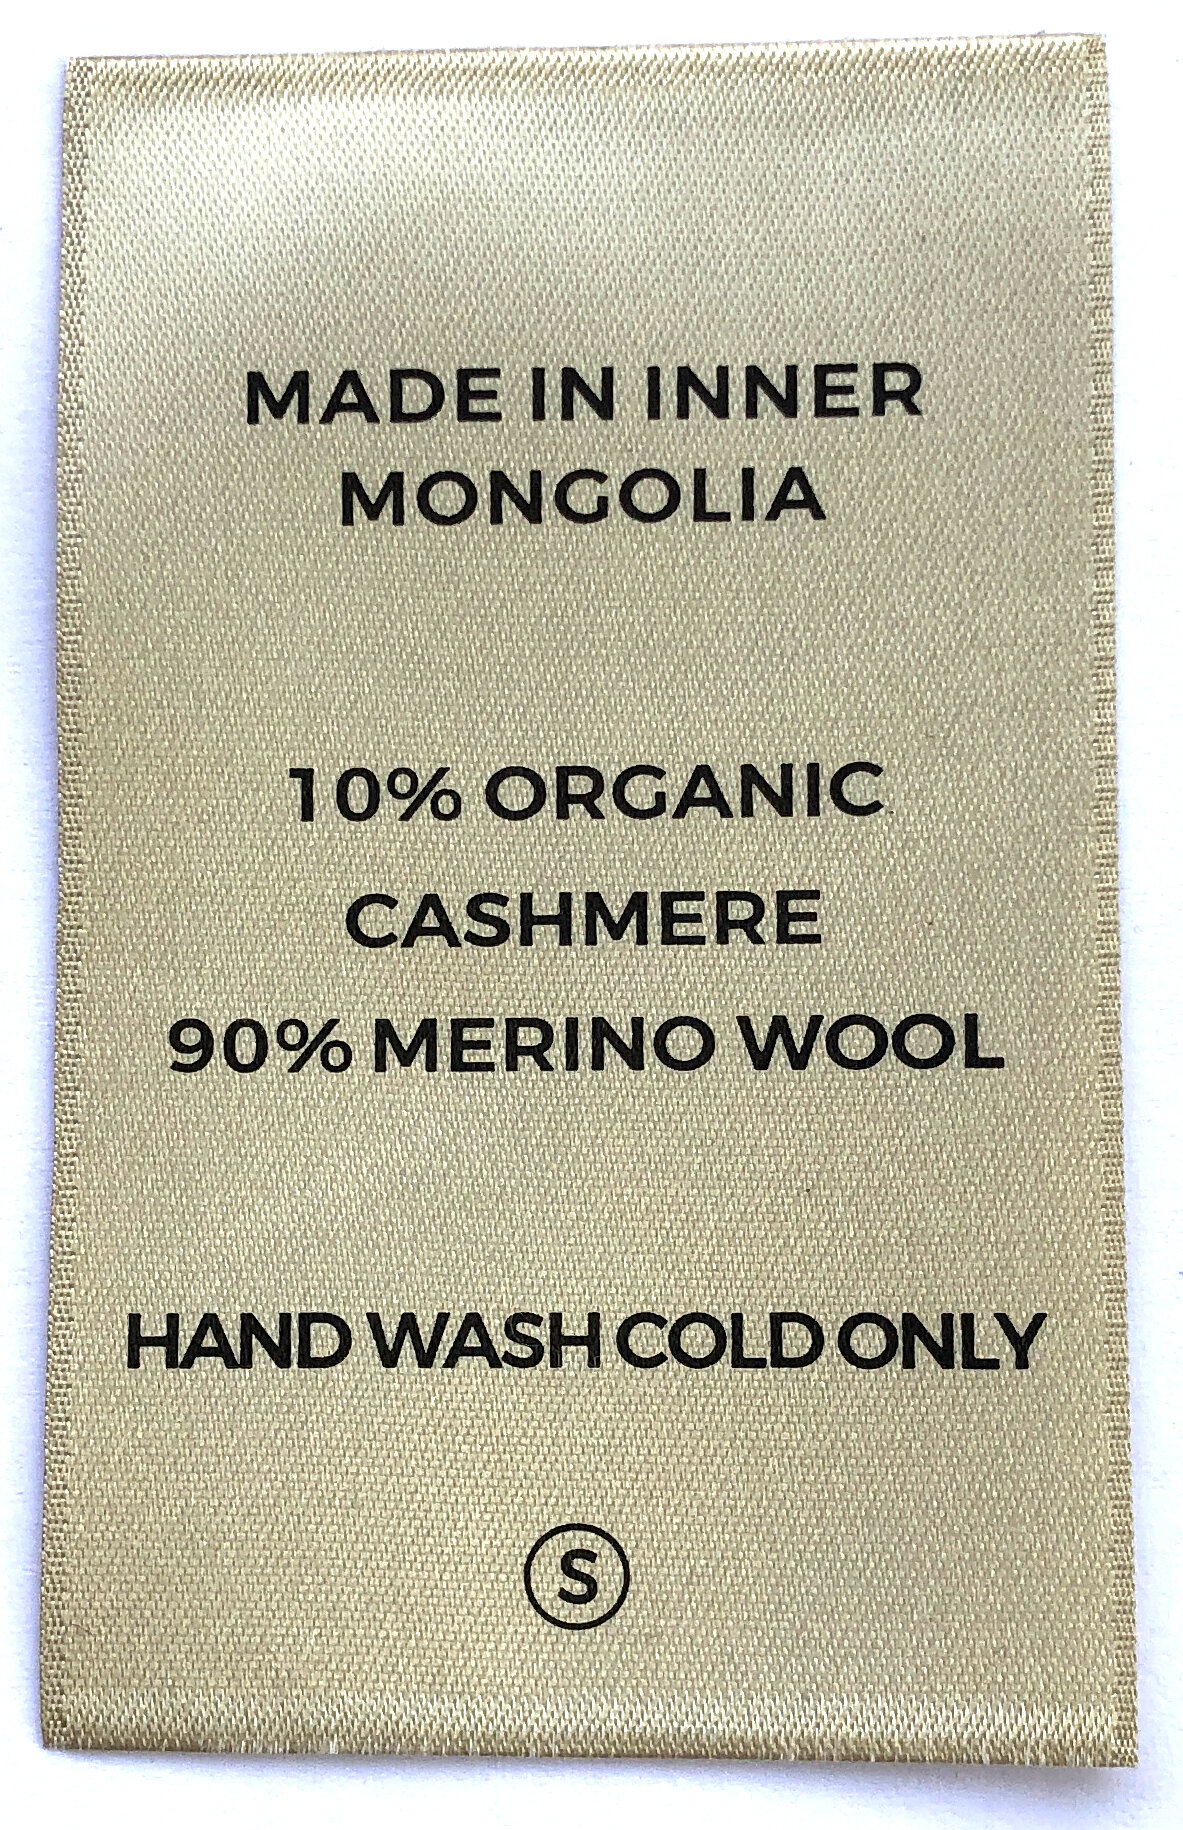 cahsmere coats labels (4).JPG